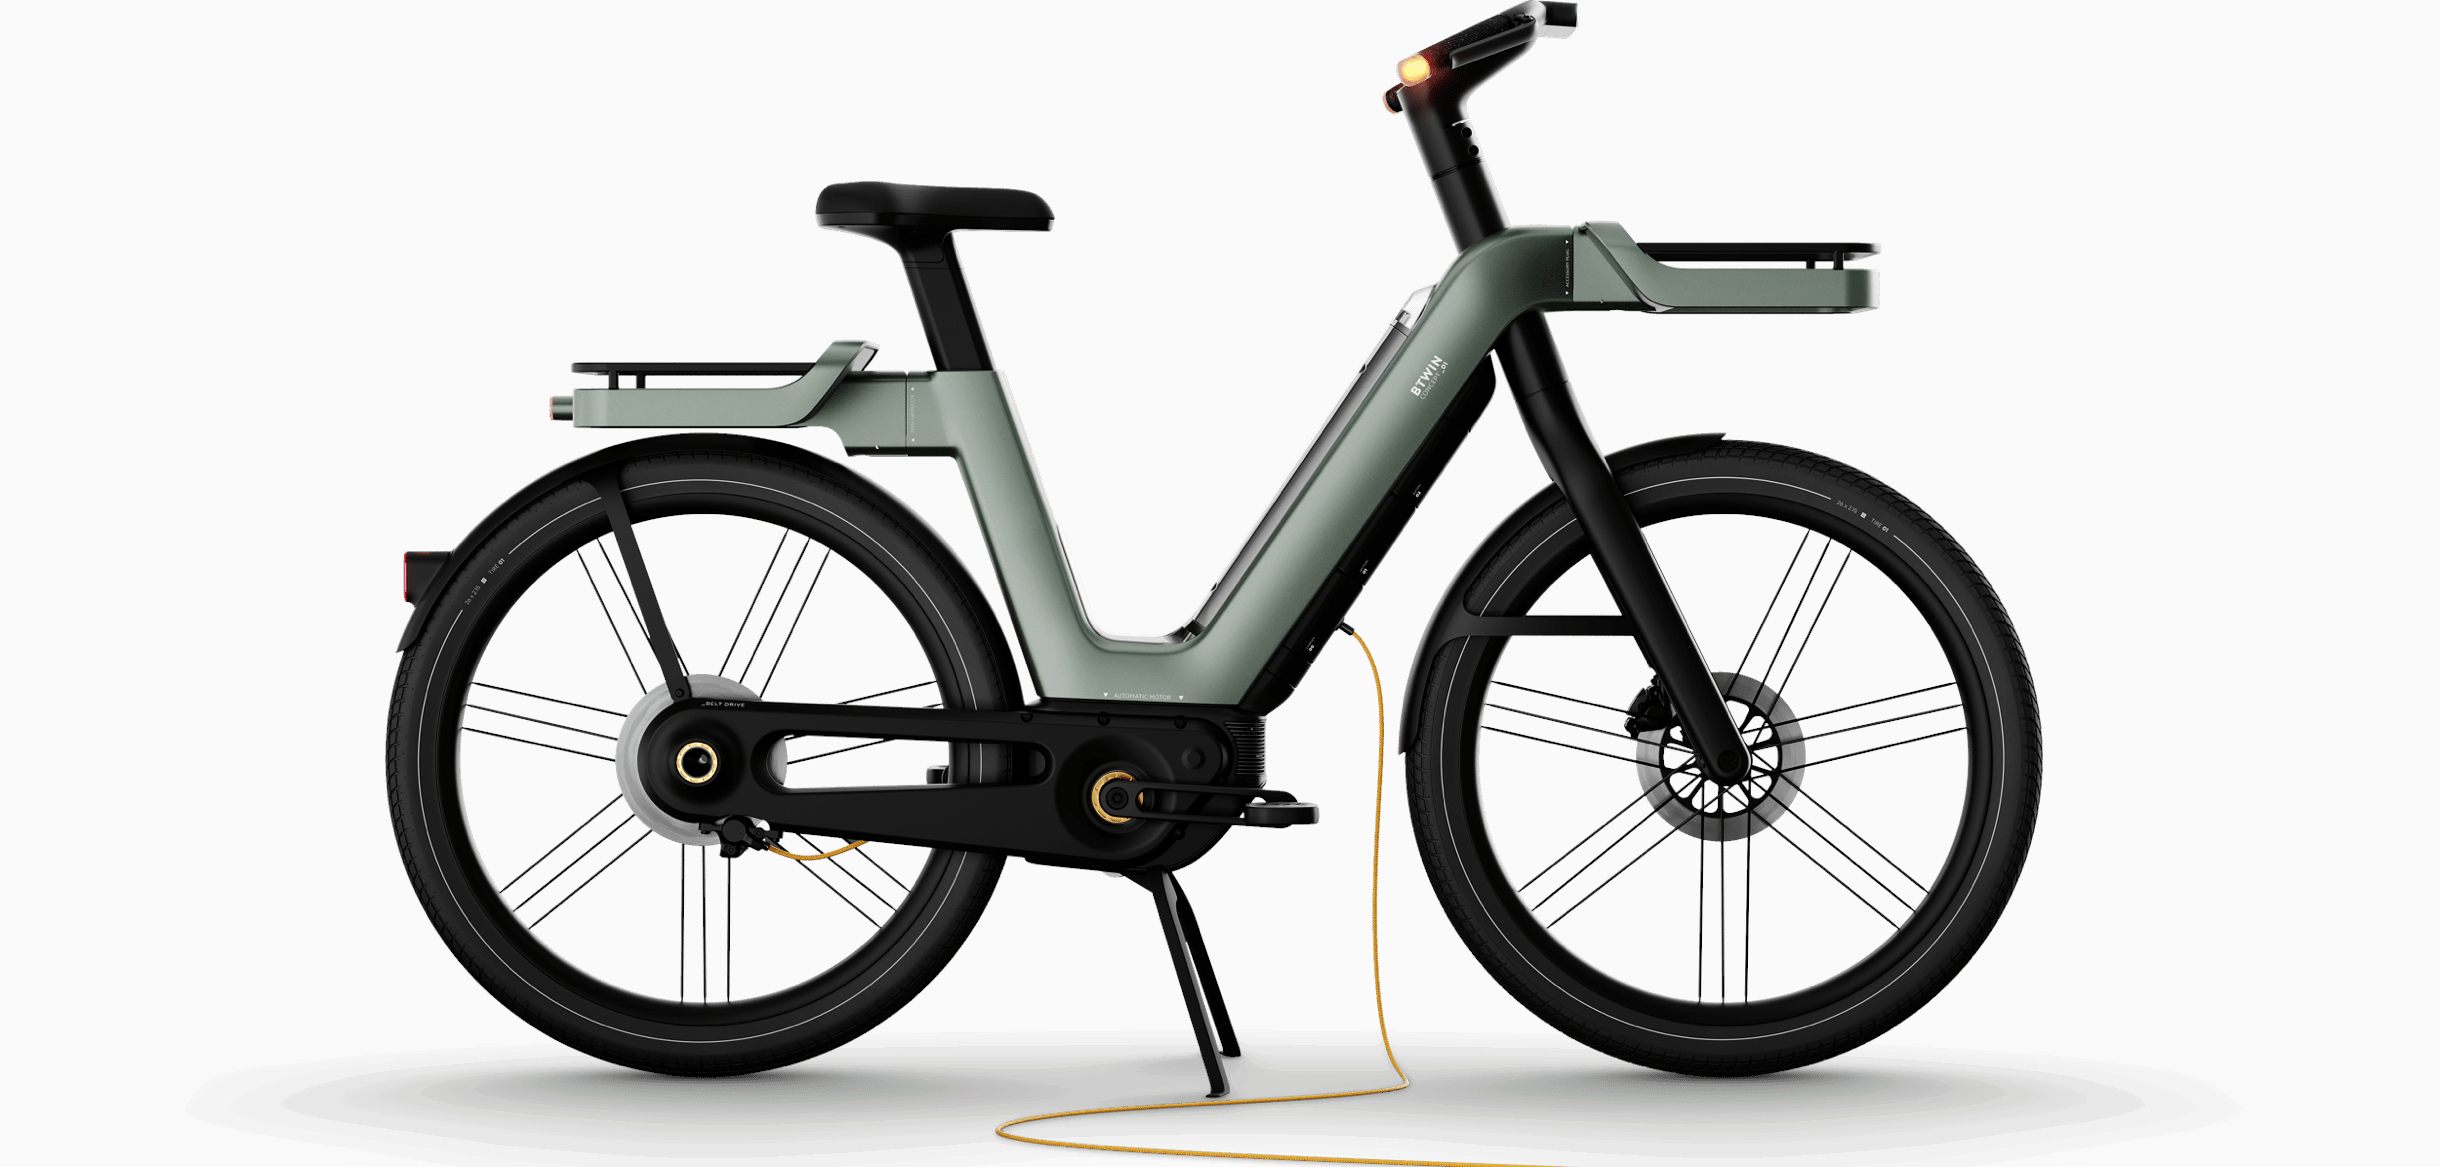 Le vélo électrique, une réponse à la sédentarité? - Planete sante